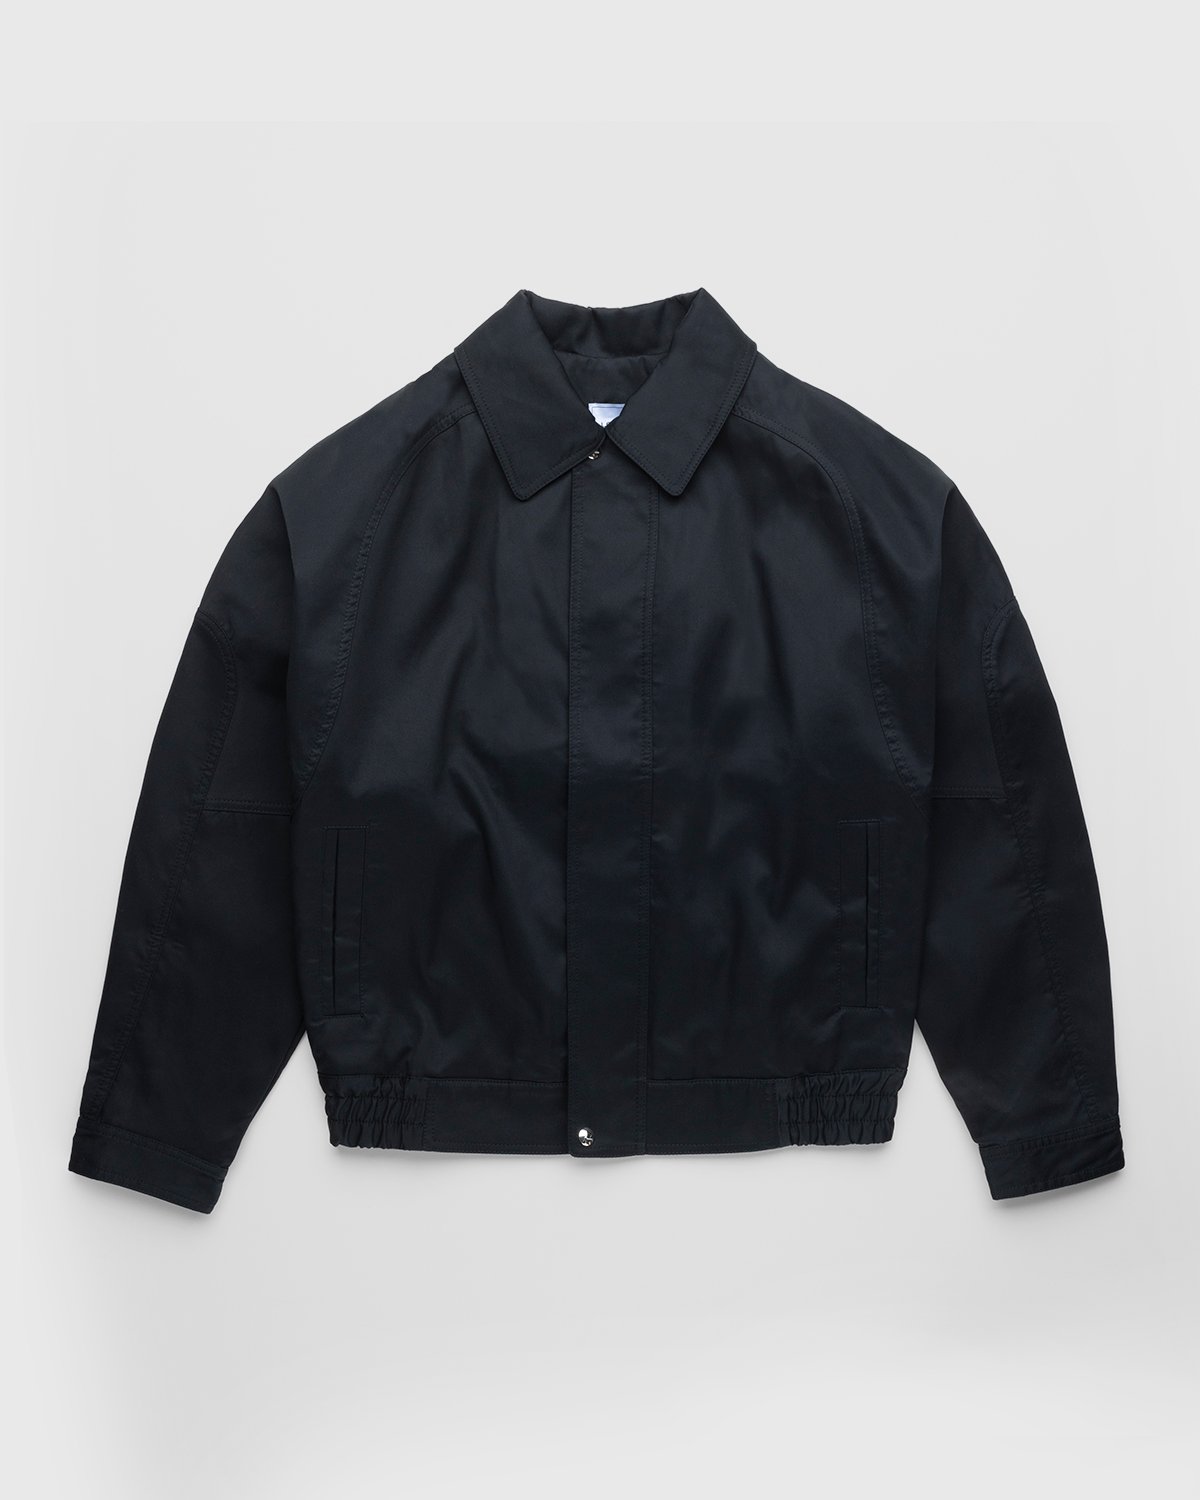 Lourdes New York - Backless Jacket Black - Clothing - Black - Image 1